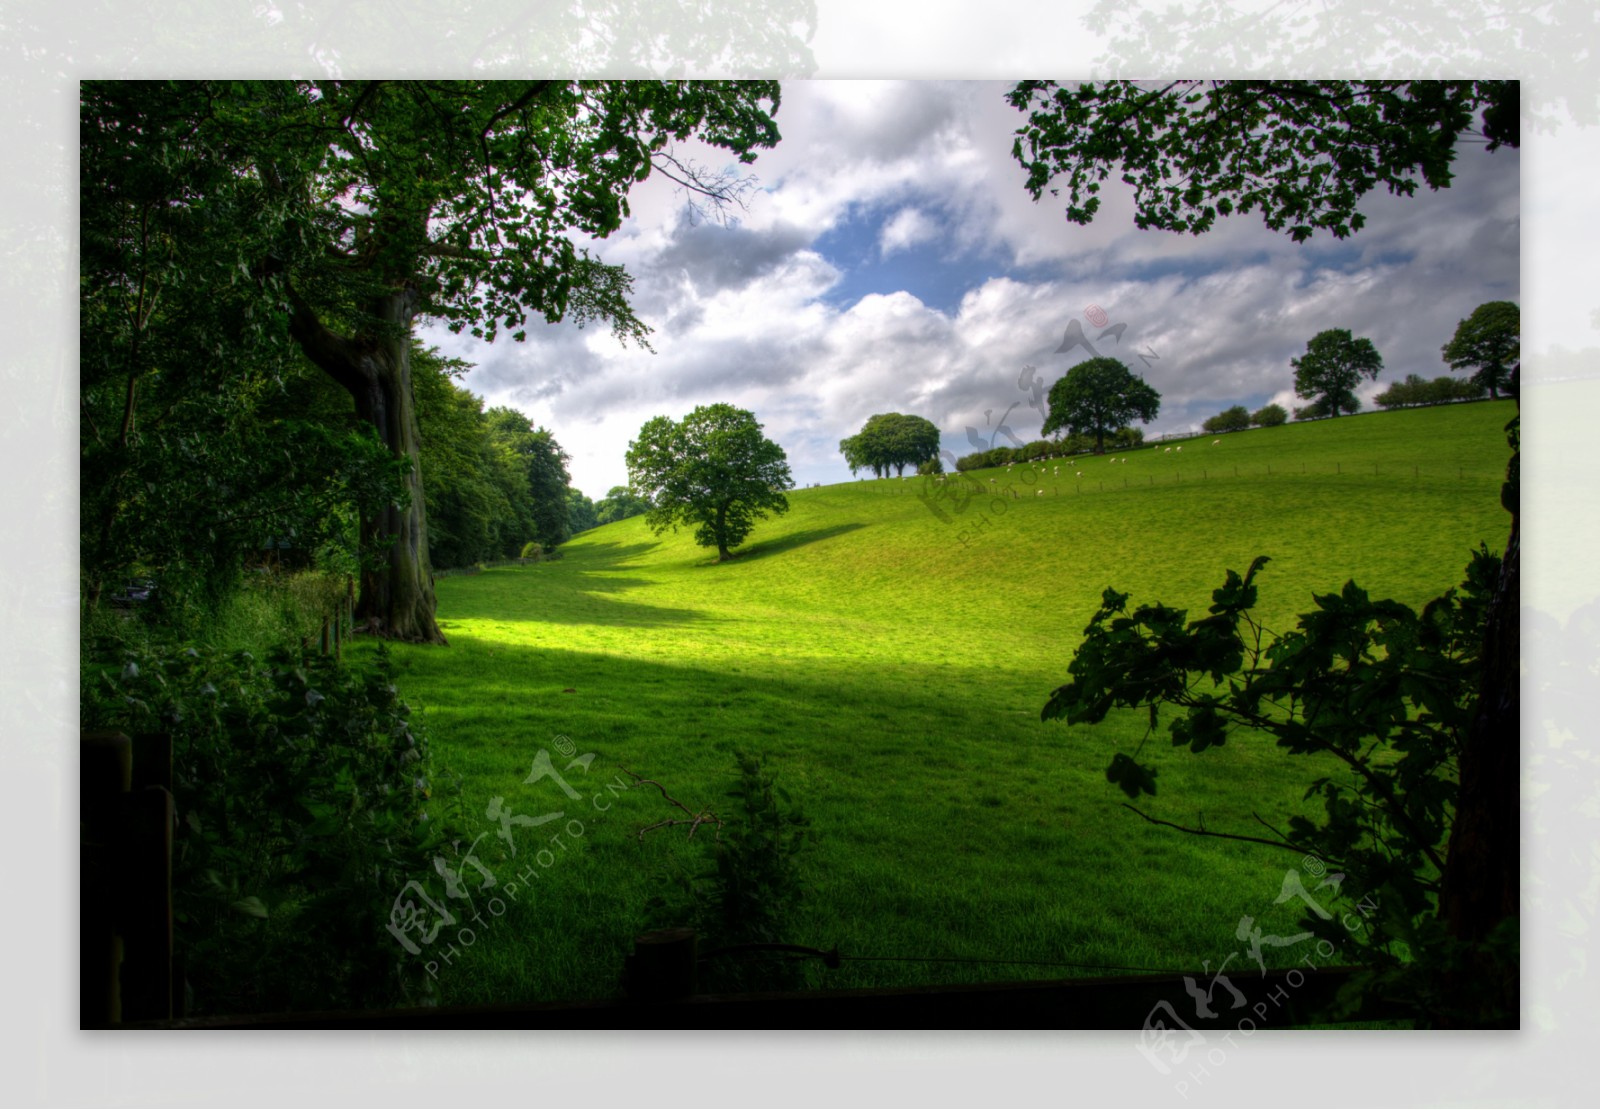 绿色牧场草地风景图片